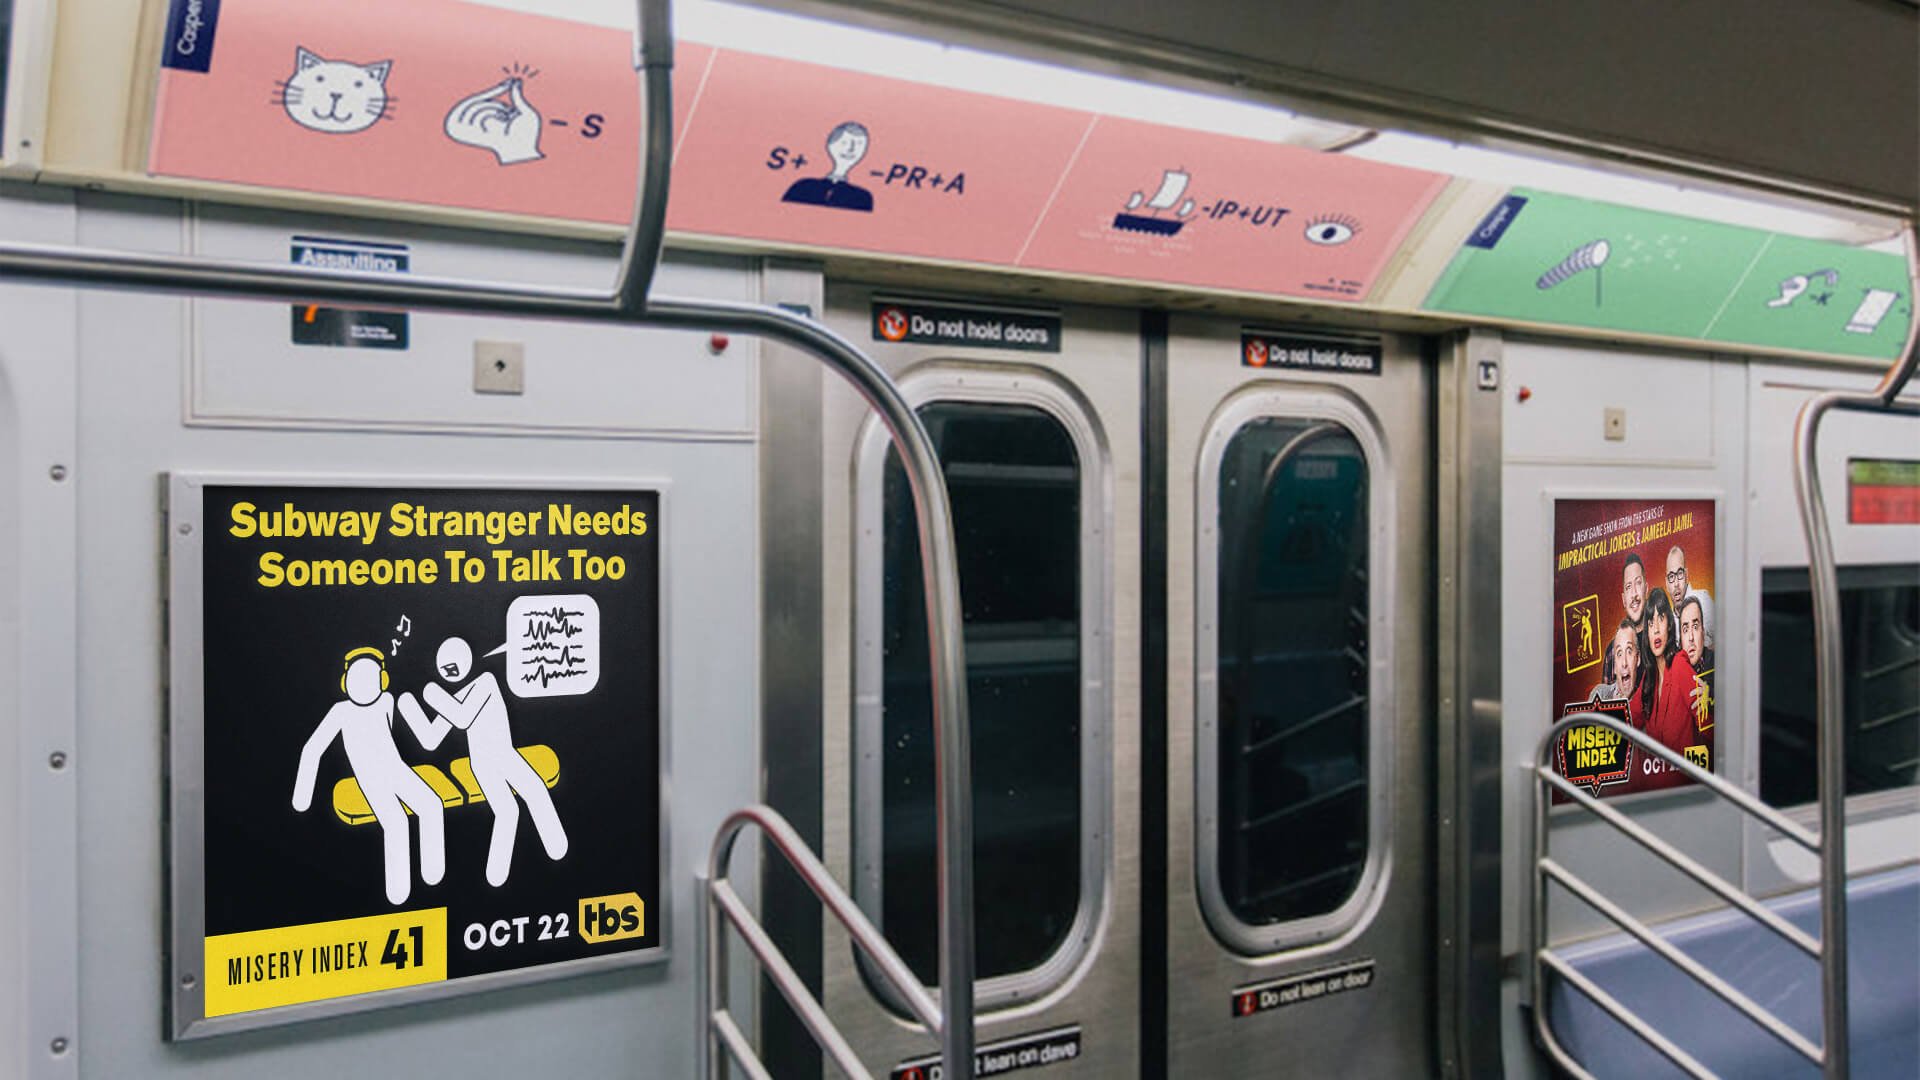 Misery Index OOH Subway Stranger